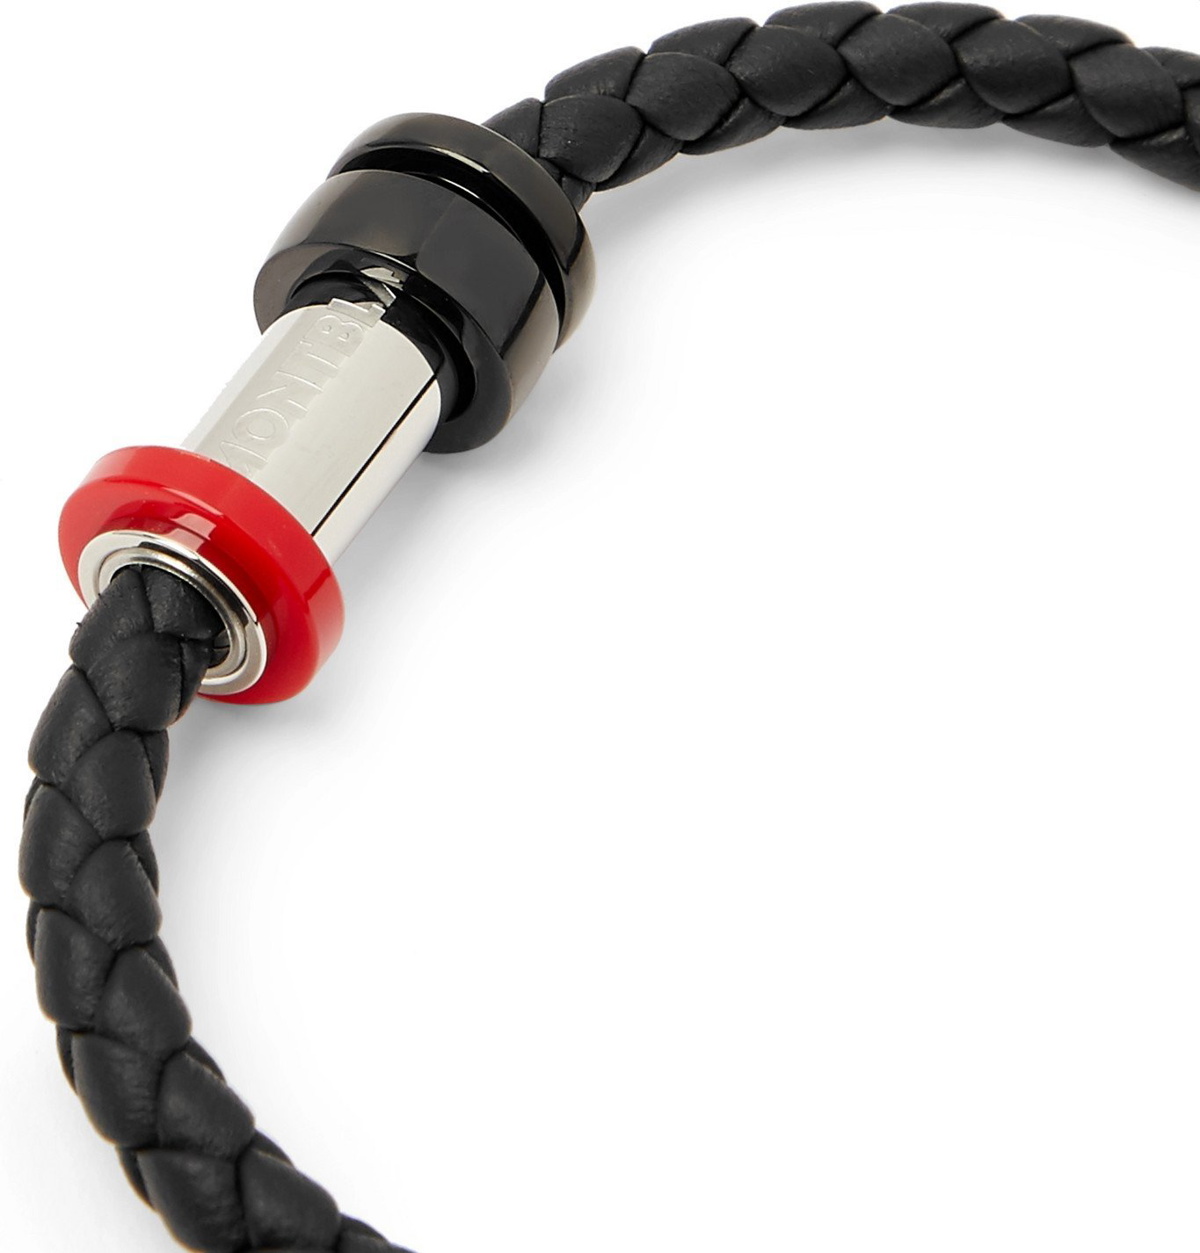 MONTBLANC Stainless Steel Cord Bracelet for Men